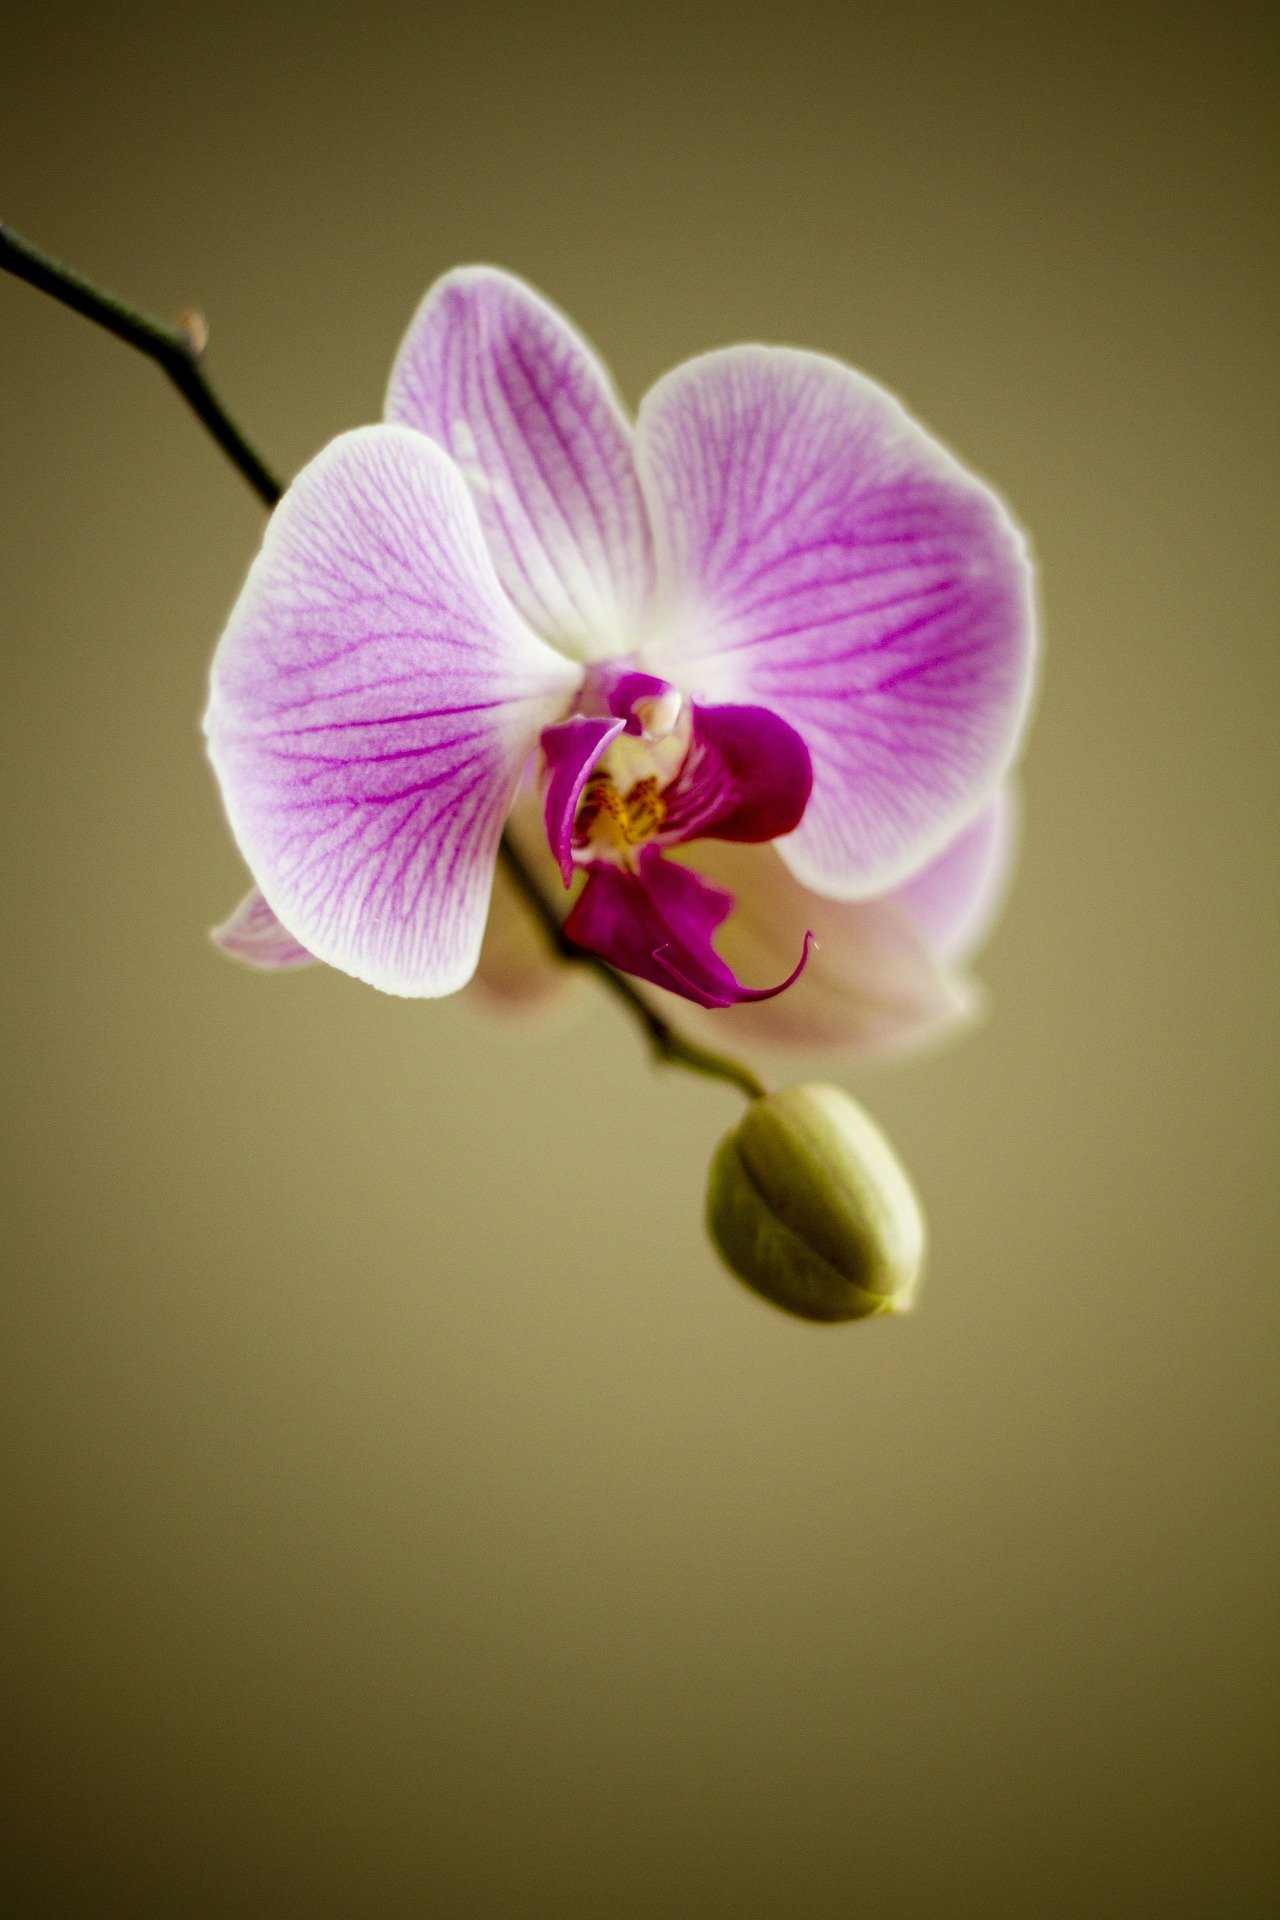 aprenda-como-cuidar-de-orquídeas